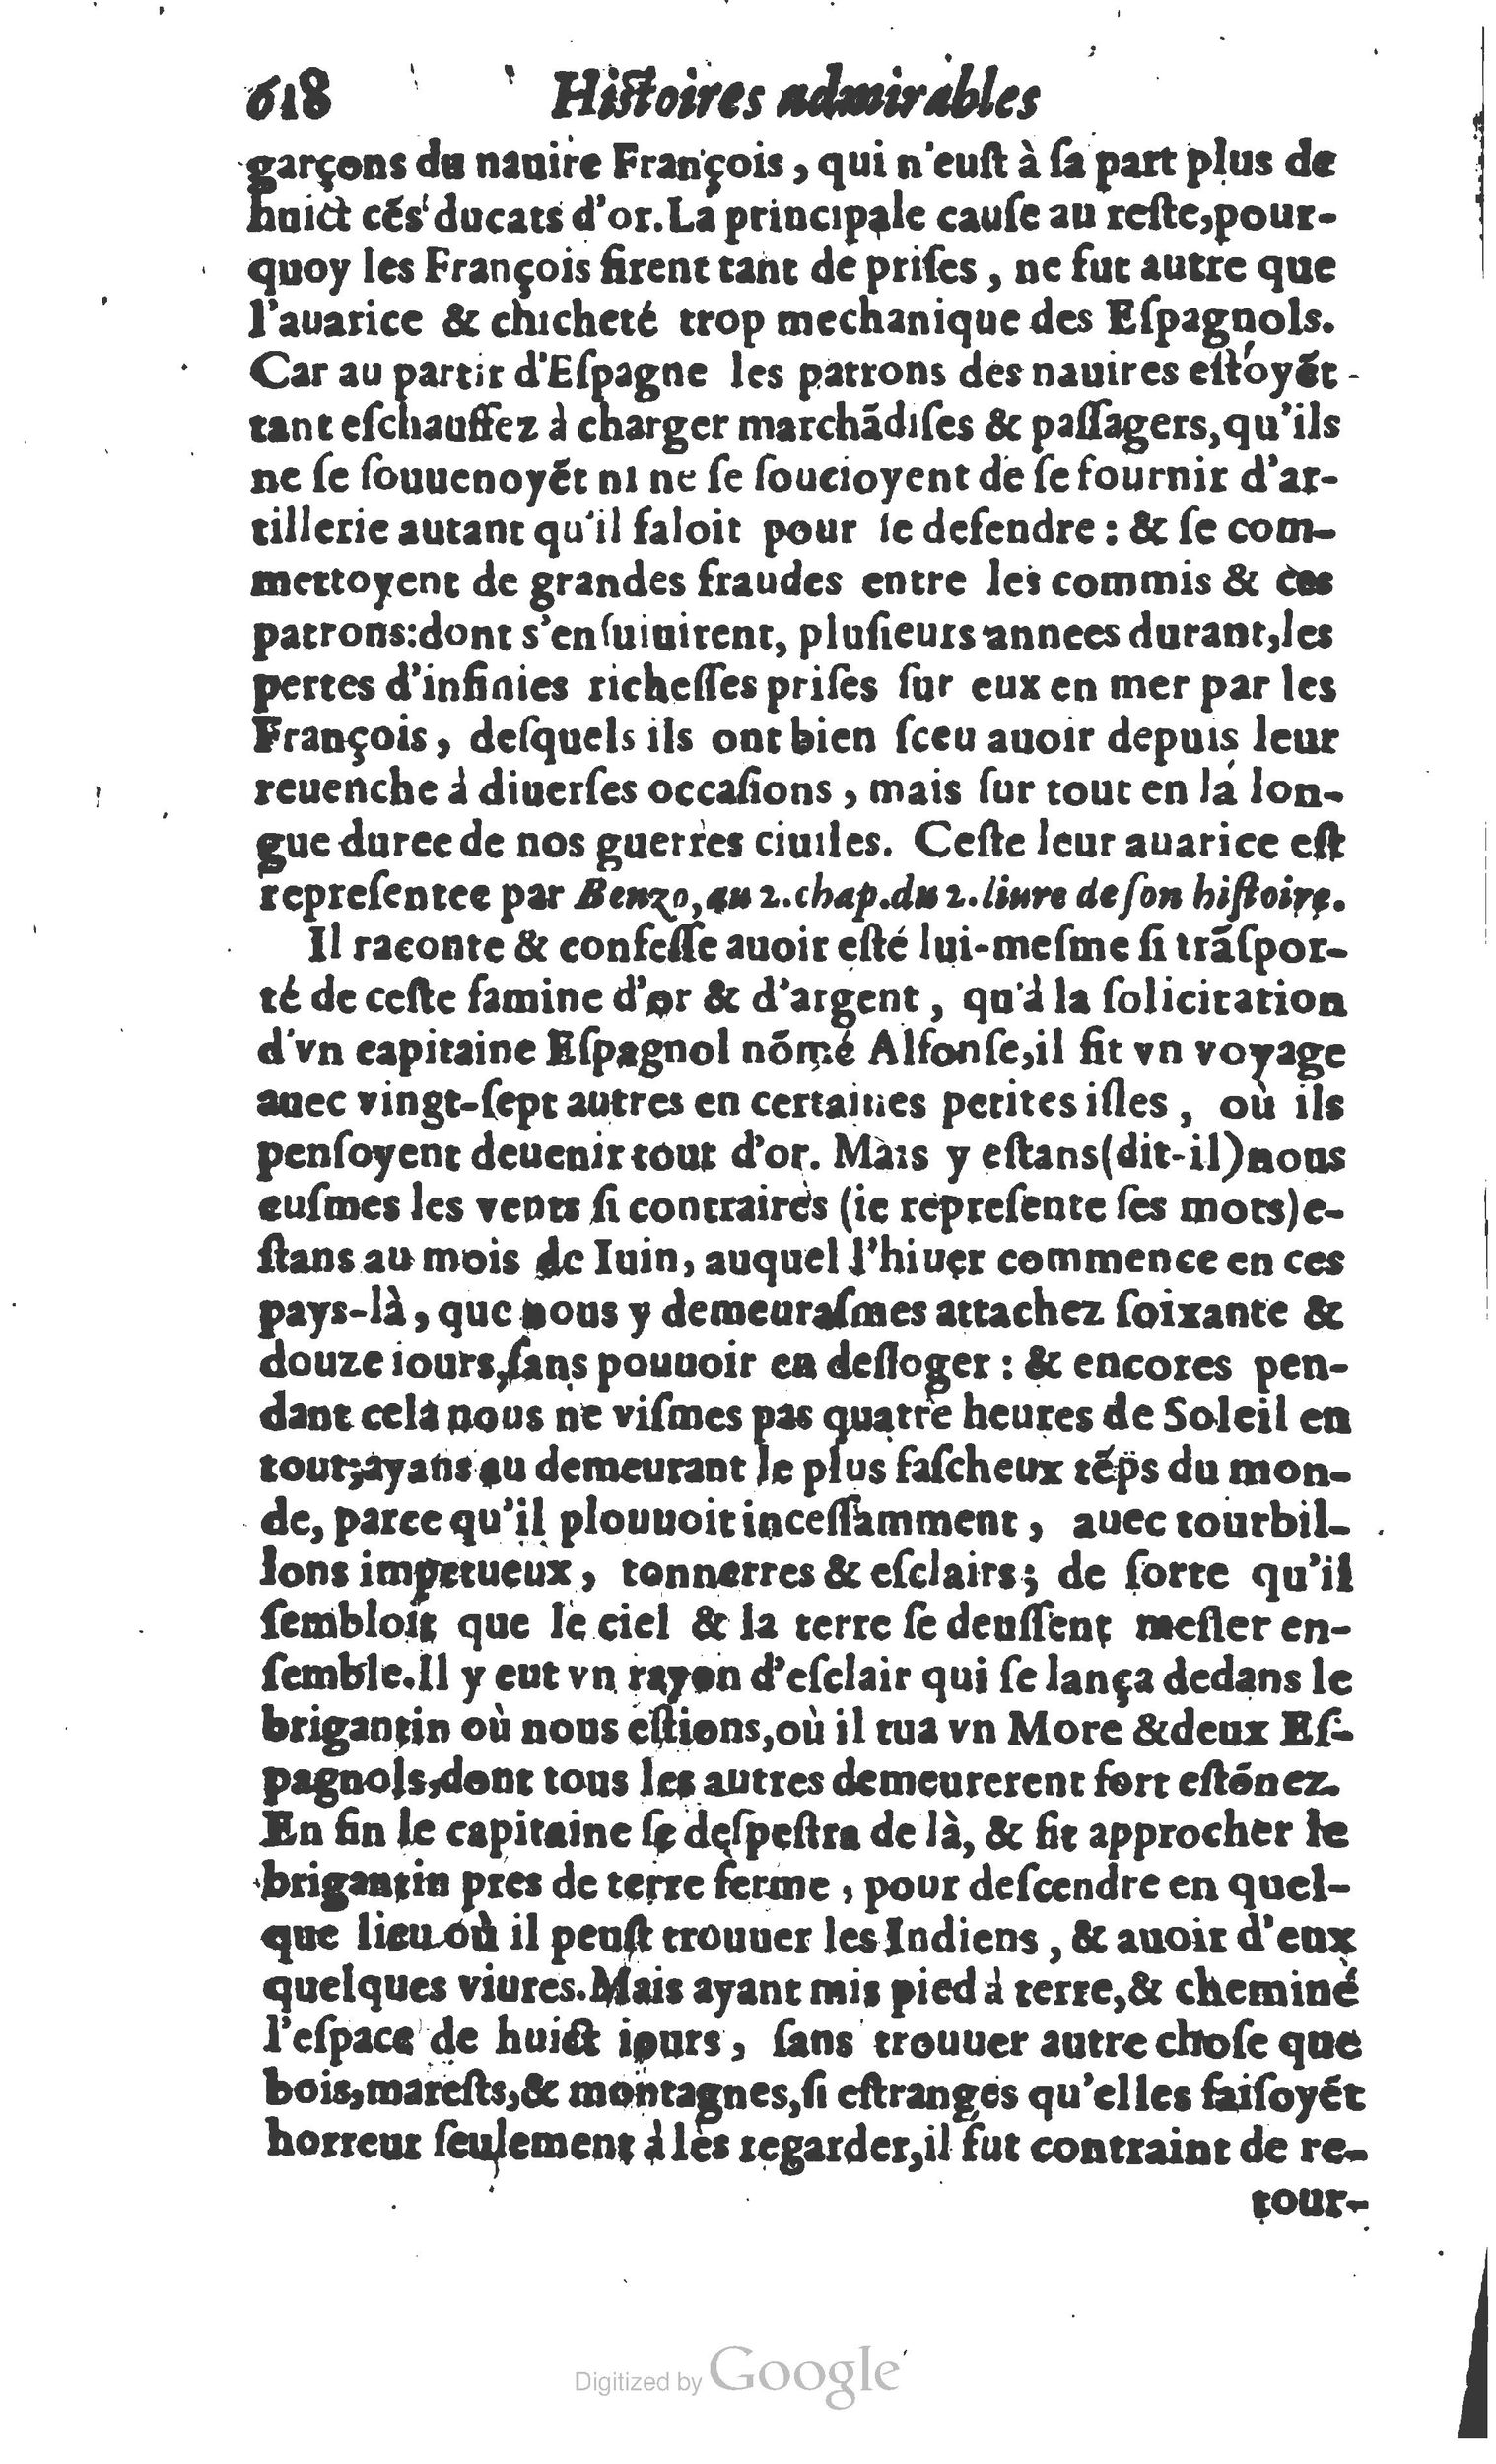 1610 Trésor d’histoires admirables et mémorables de nostre temps Marceau Princeton_Page_0639.jpg